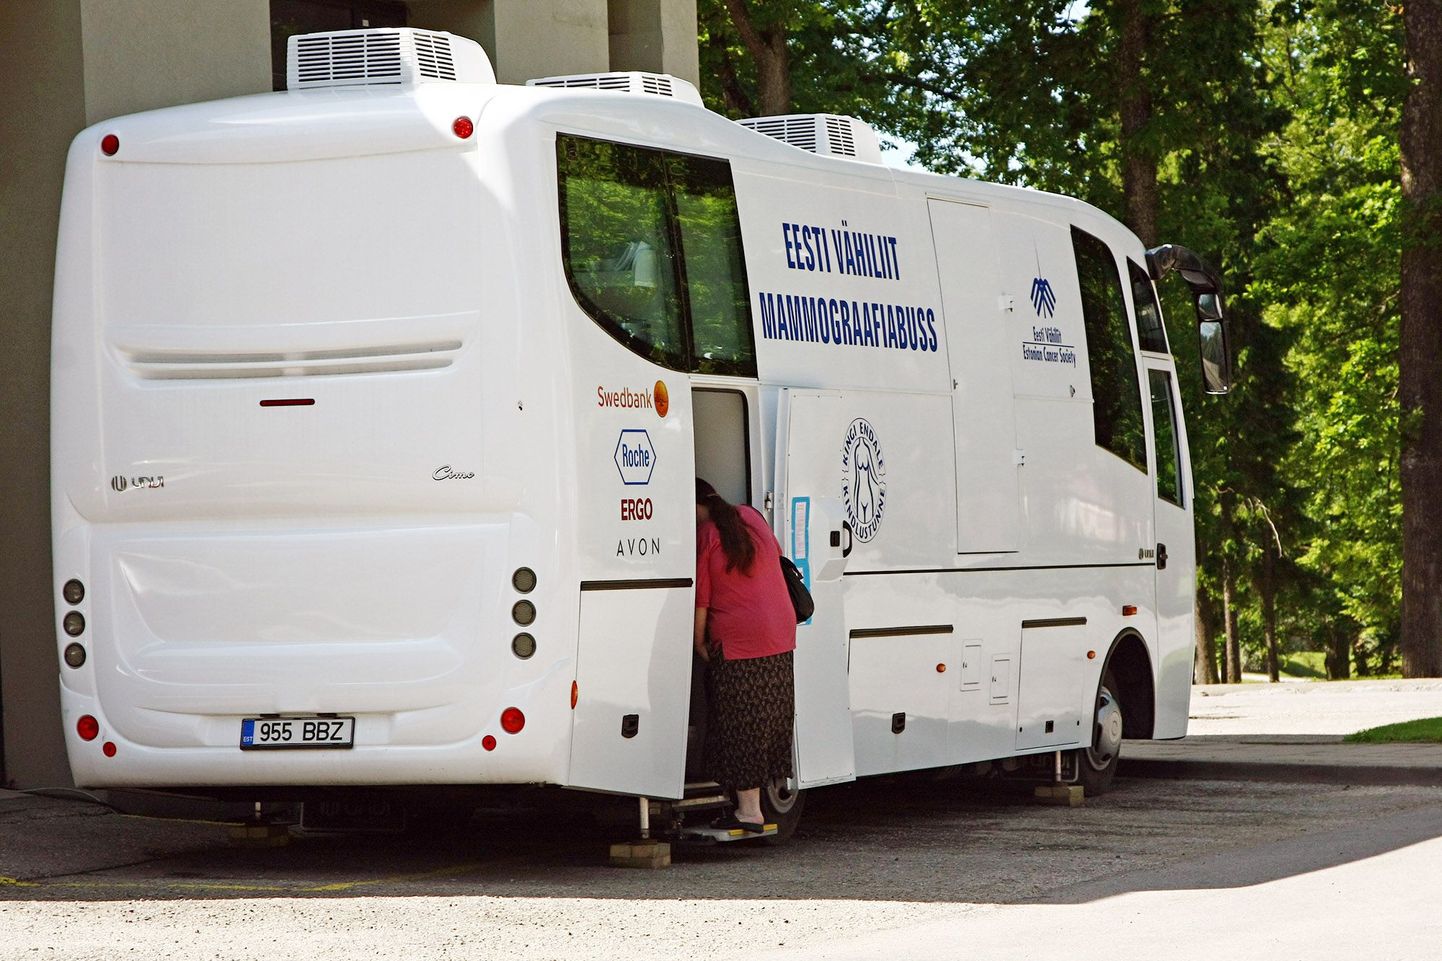 Valga haigla kõrval seisvasse Eesti Vähiliidu mammograafiabussi siseneb järjekordne inimene.